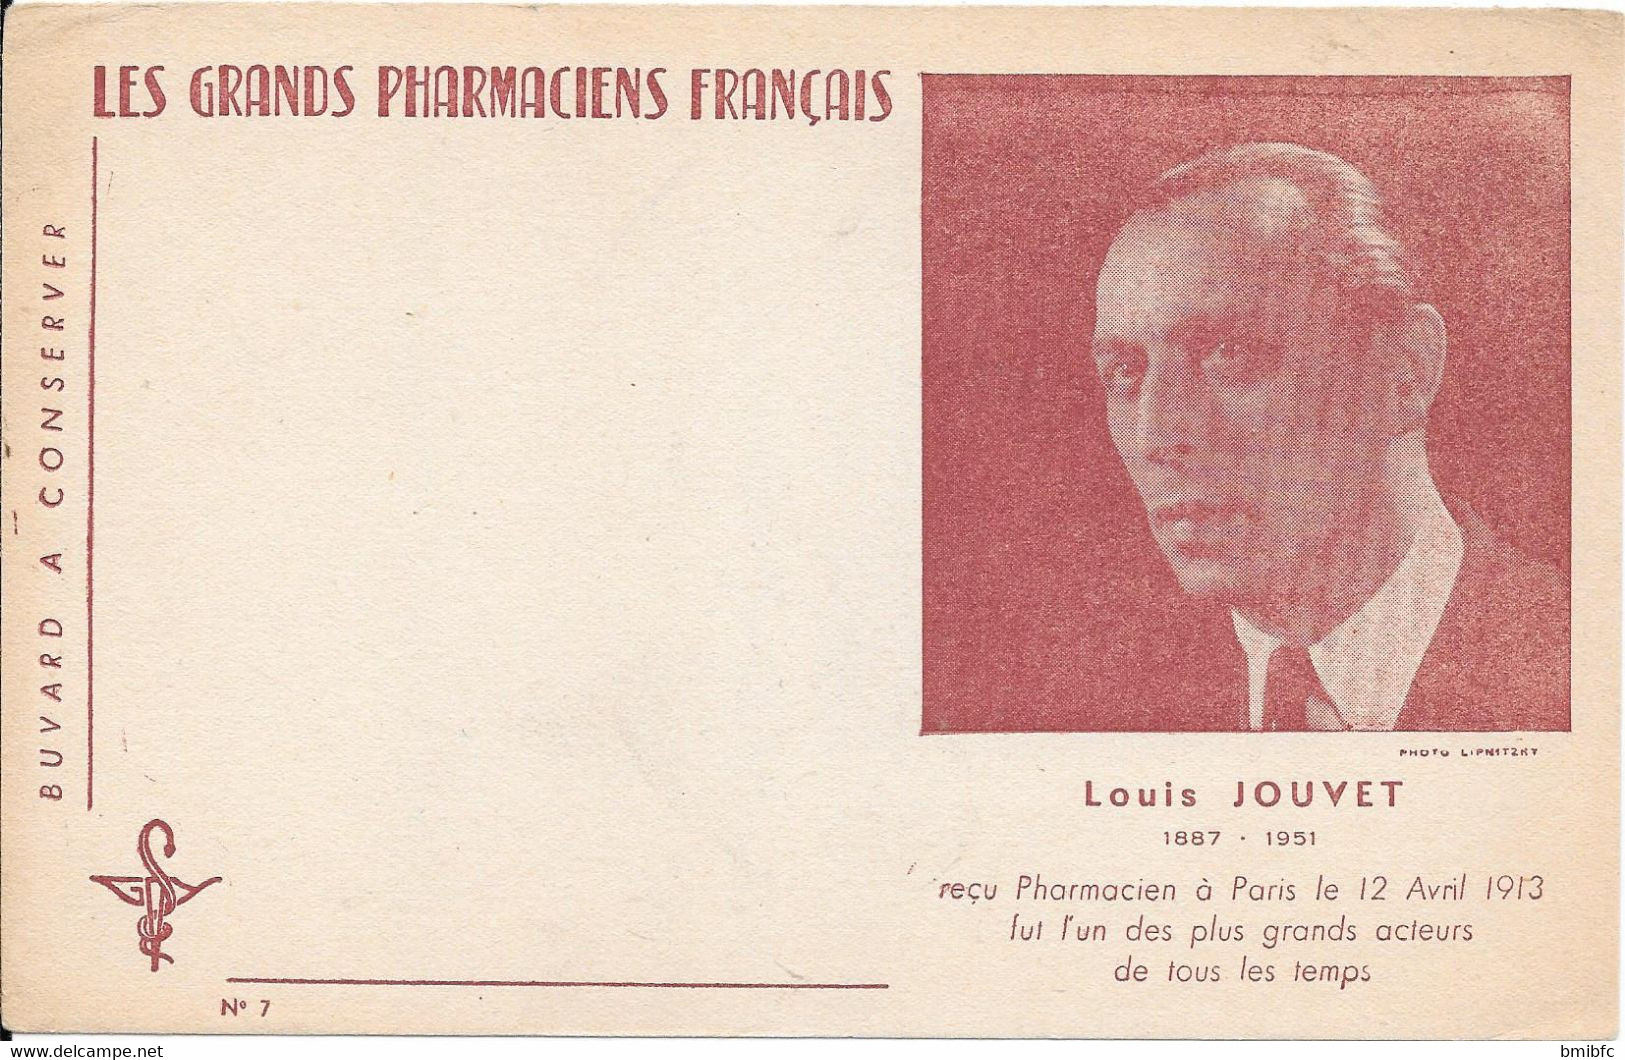 LES GRANDS PHARMACIENS FRANÇAIS - LOUIS JOUVET 1887-1951 - P